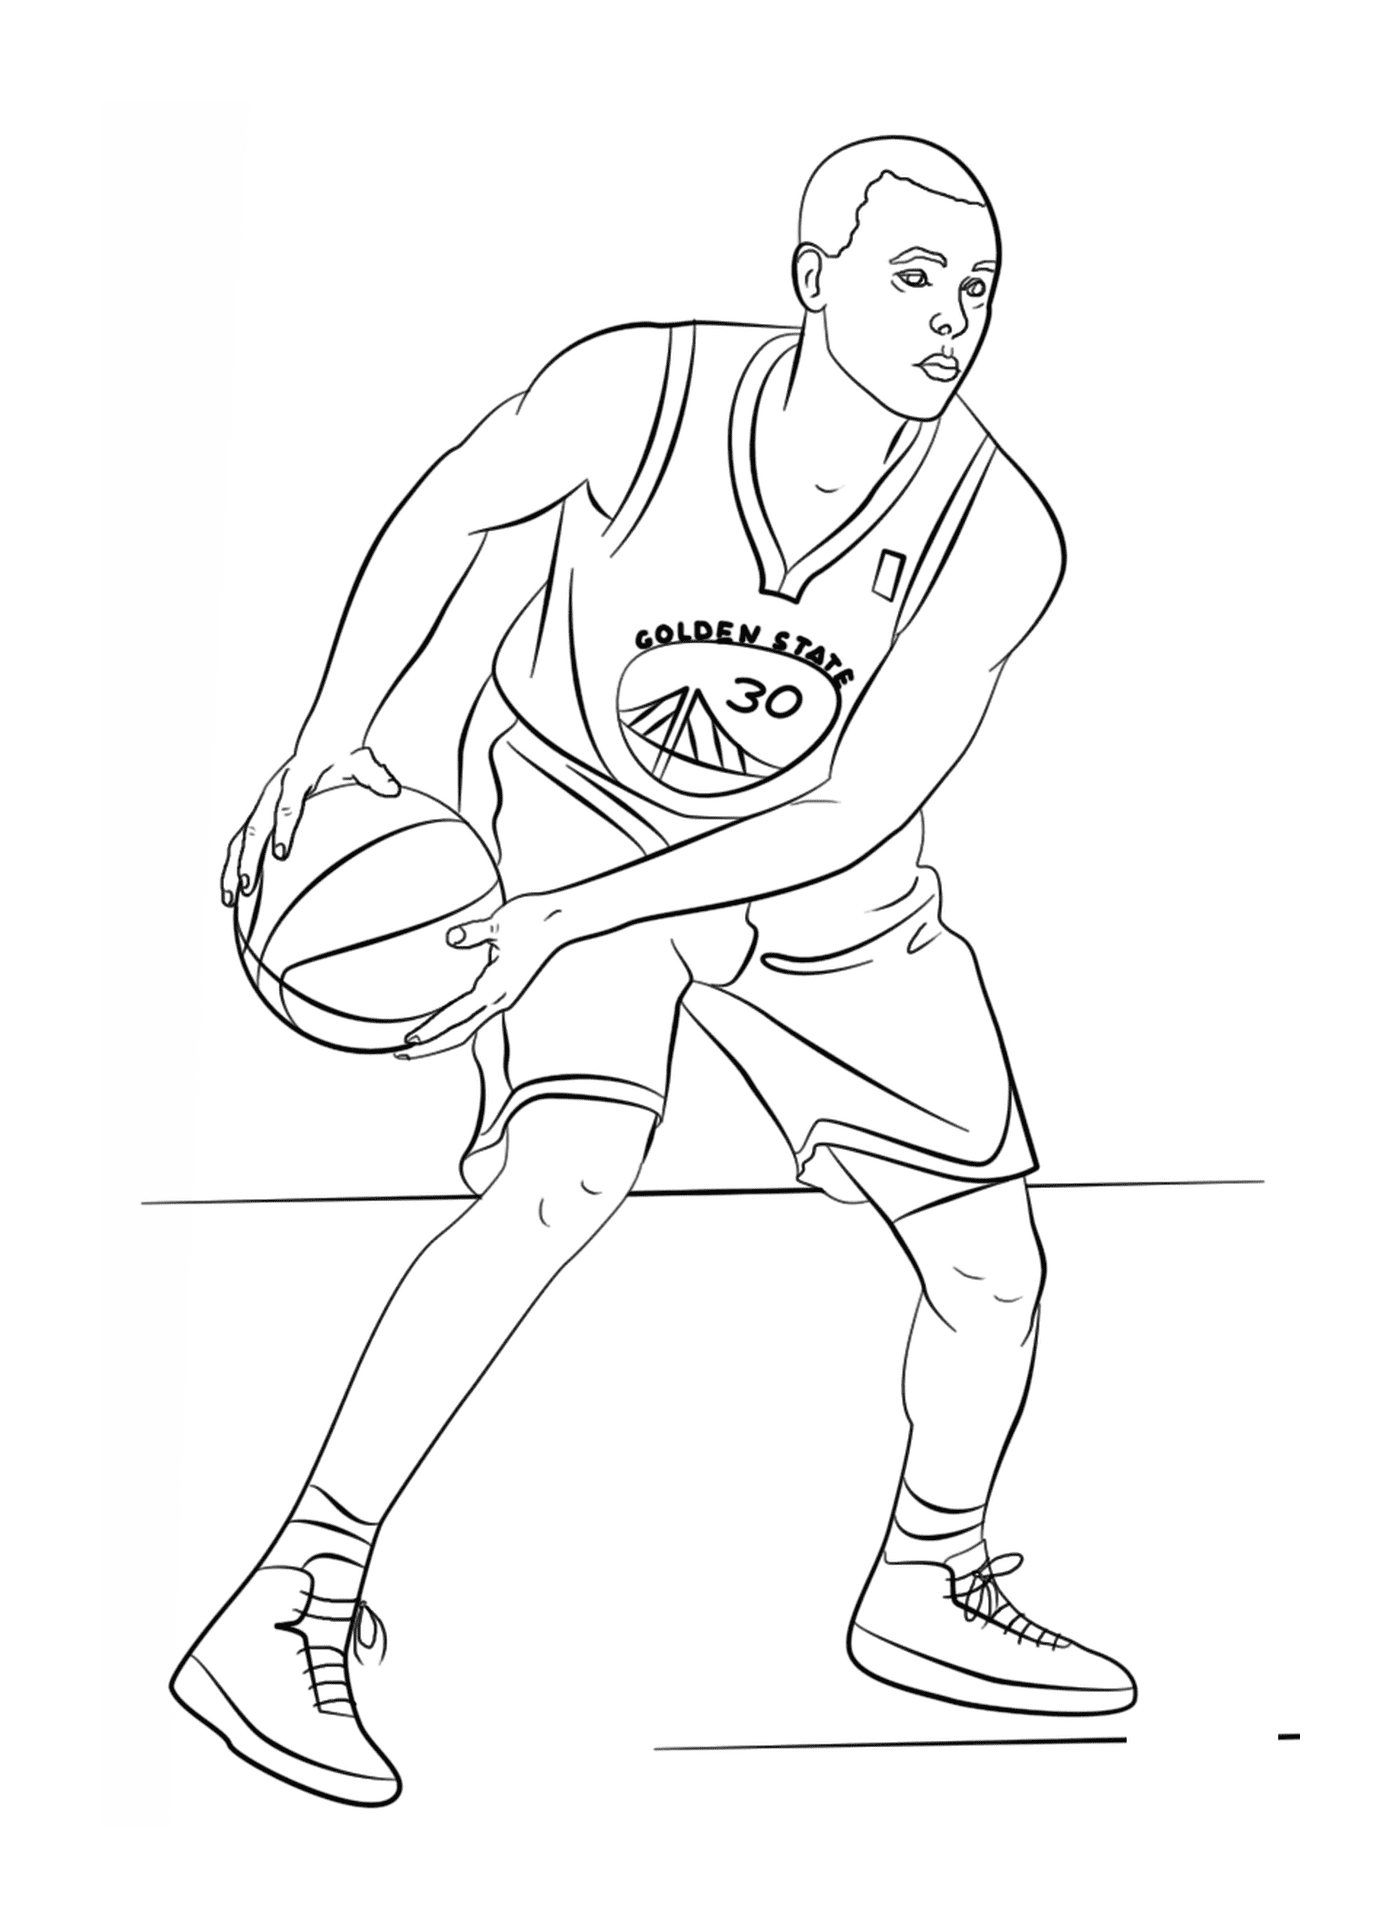  Stephen Curry, jogador de basquete da NBA 